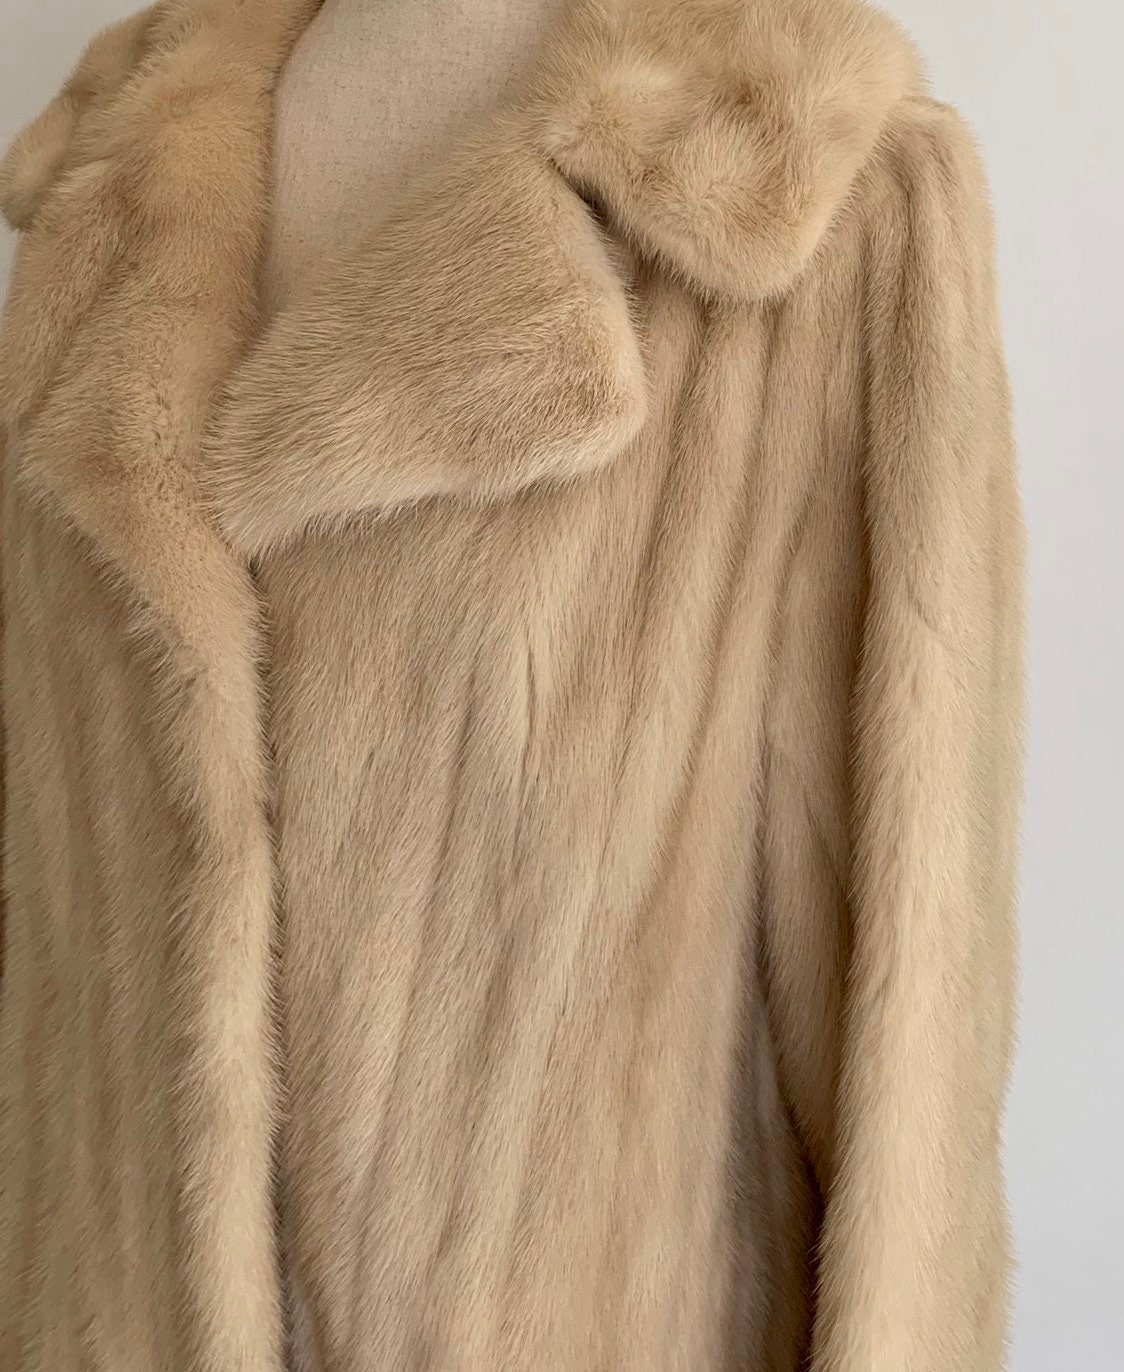 Blonde Mink Fur Coat Vintage Mid Century 60 S Montaldos Women S Winter Dress Evening Coat Lined